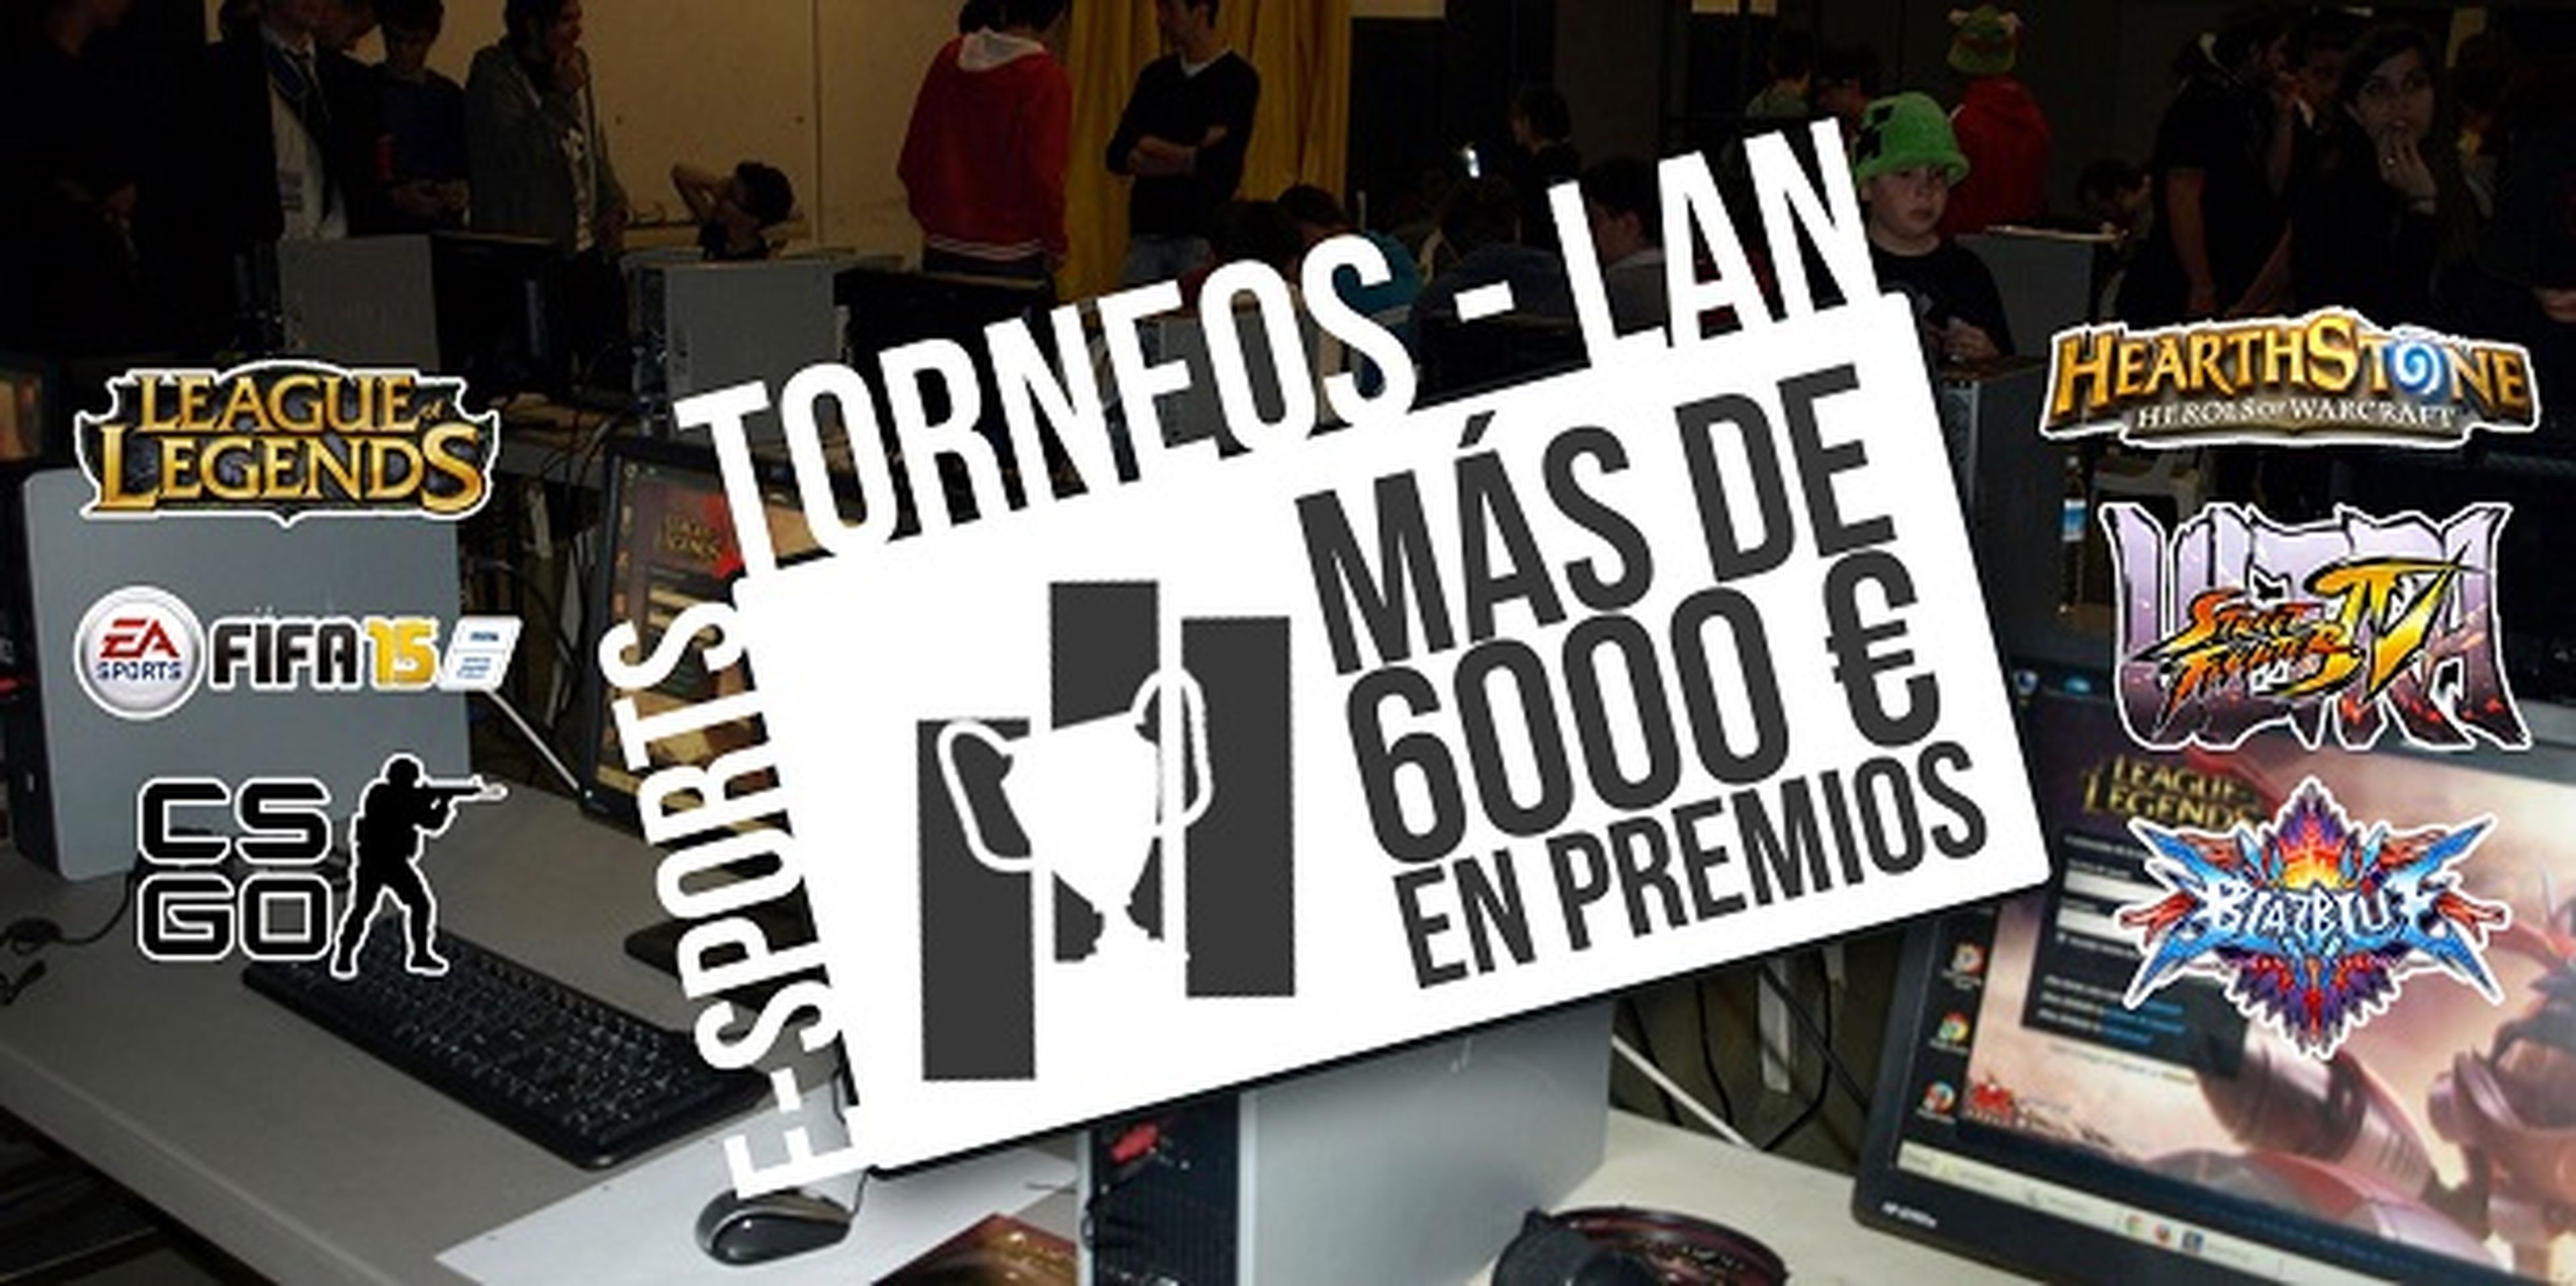 OGSeries celebrará sus finales eSports en Granada Gaming